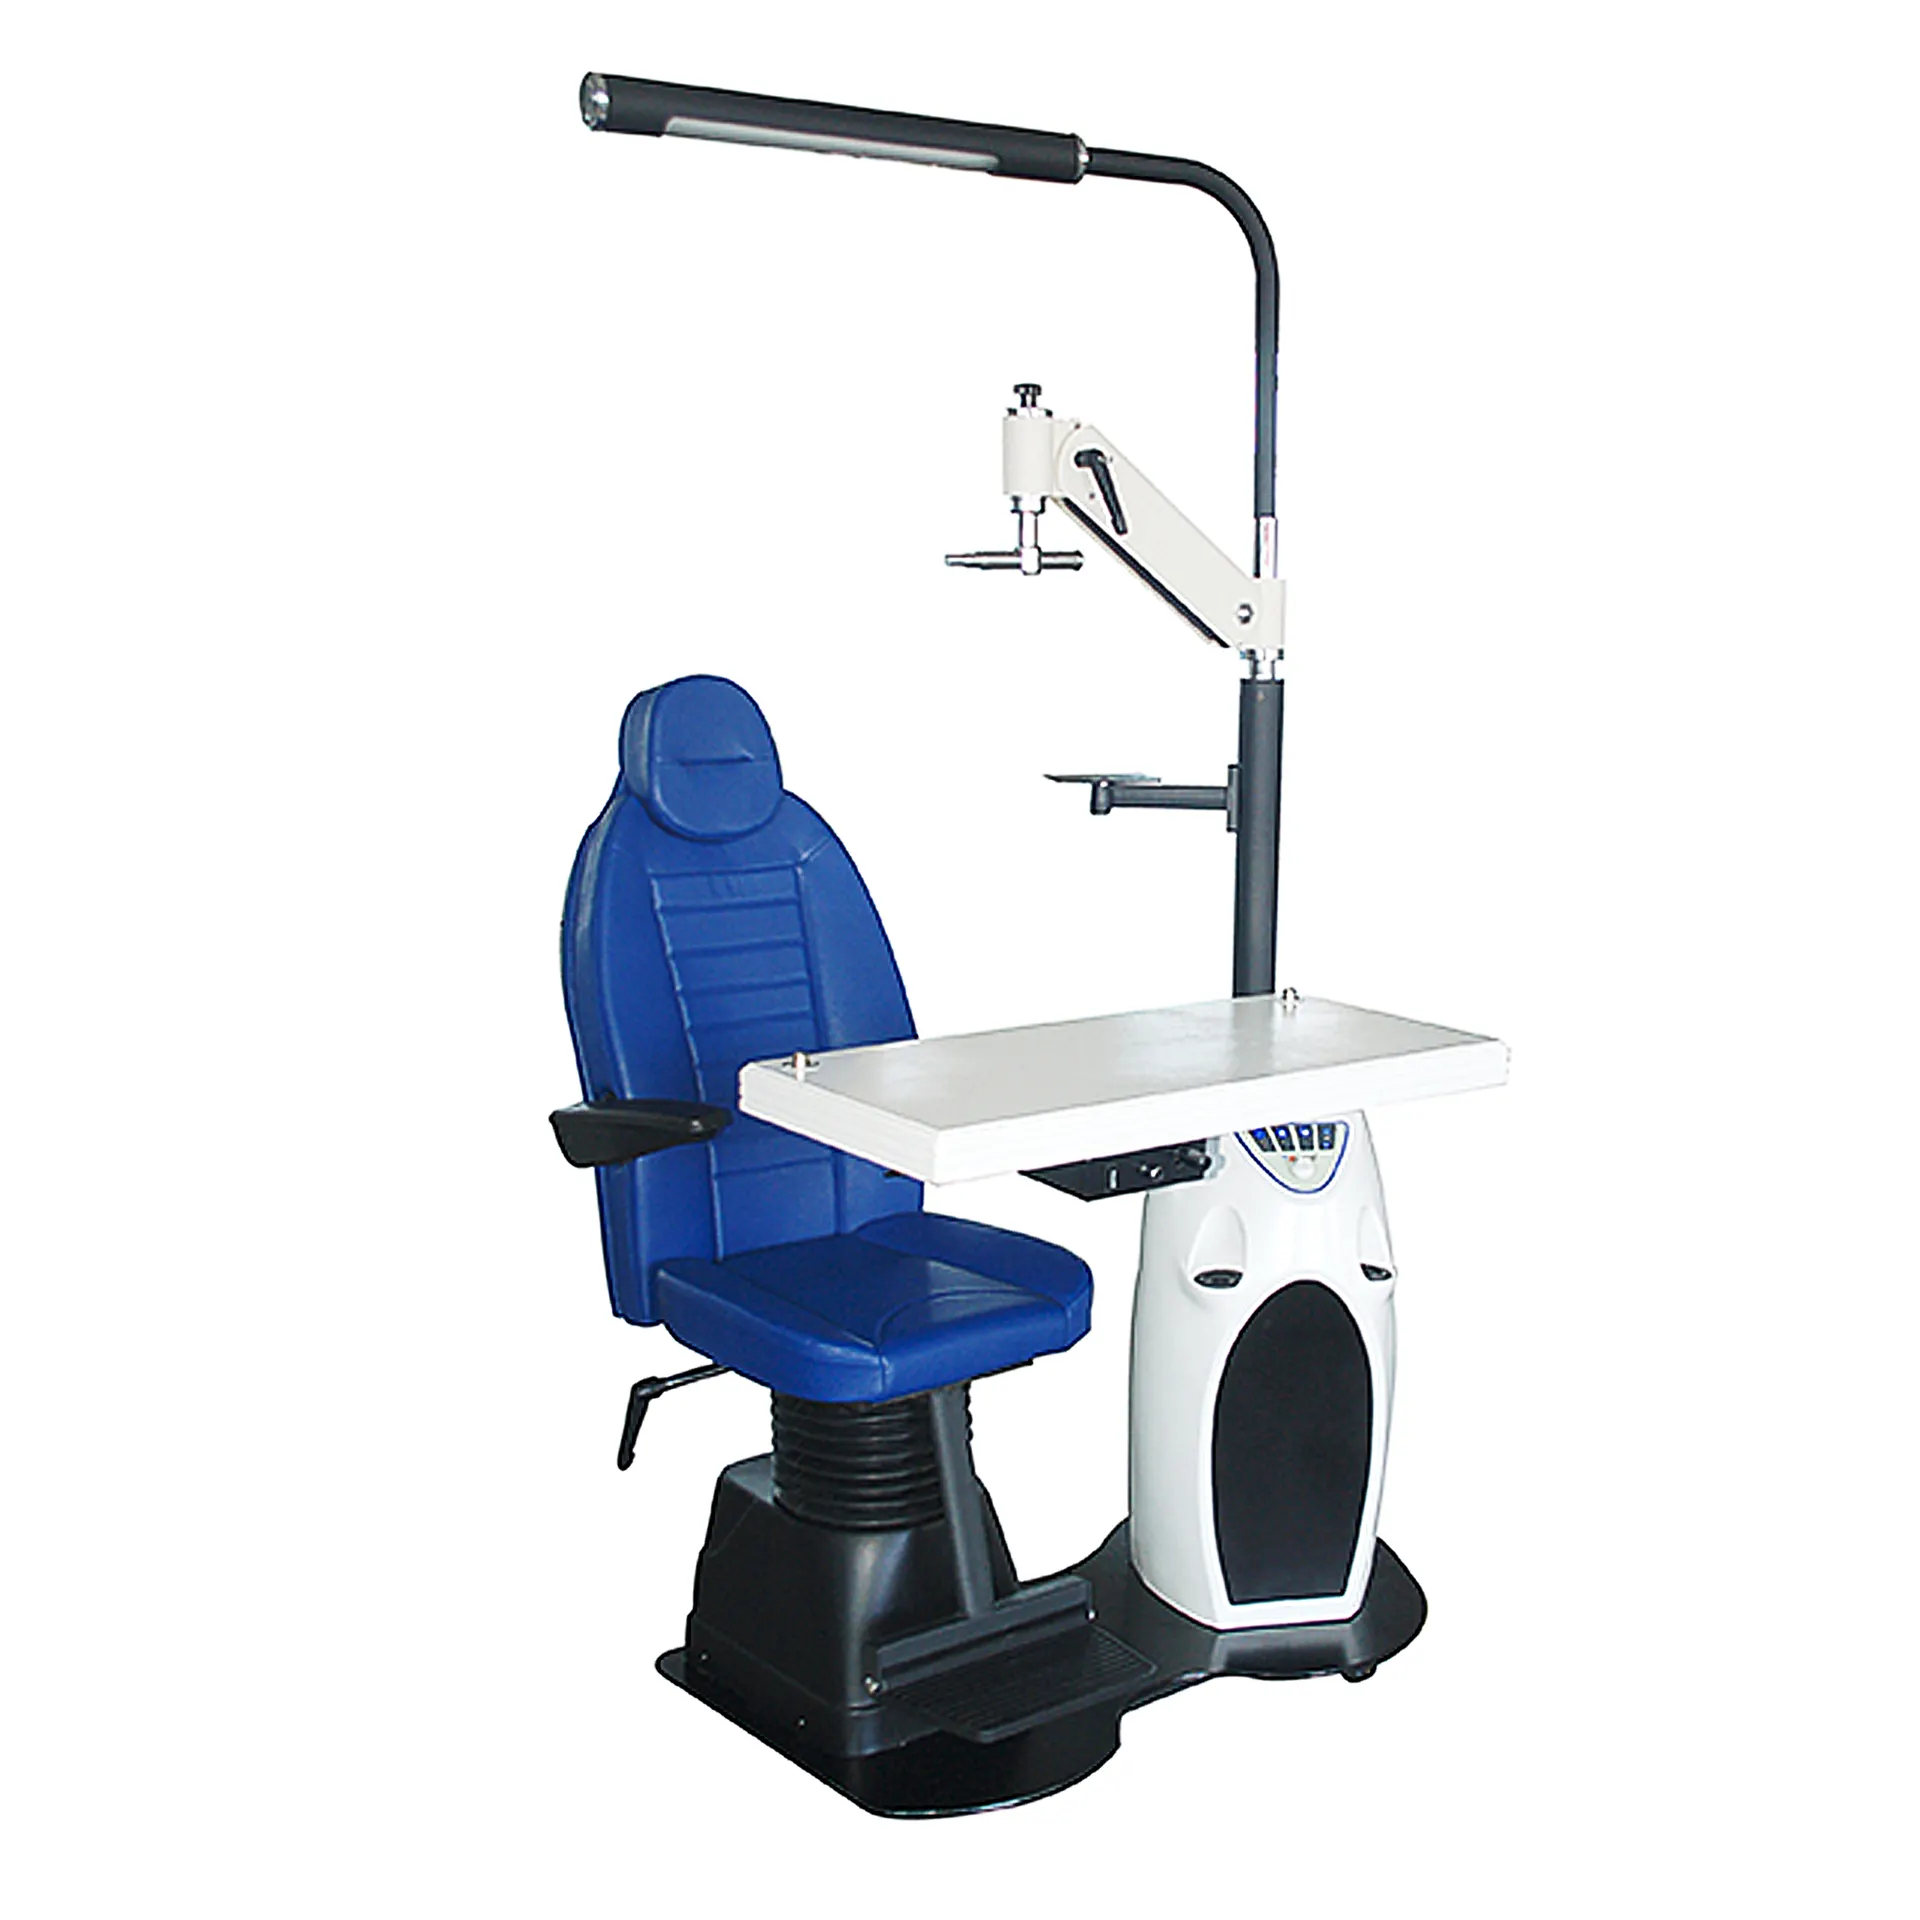 La table combinée ophtalmique/optométrie CT-150 la capacité unique de contrôler toute la salle d'examen